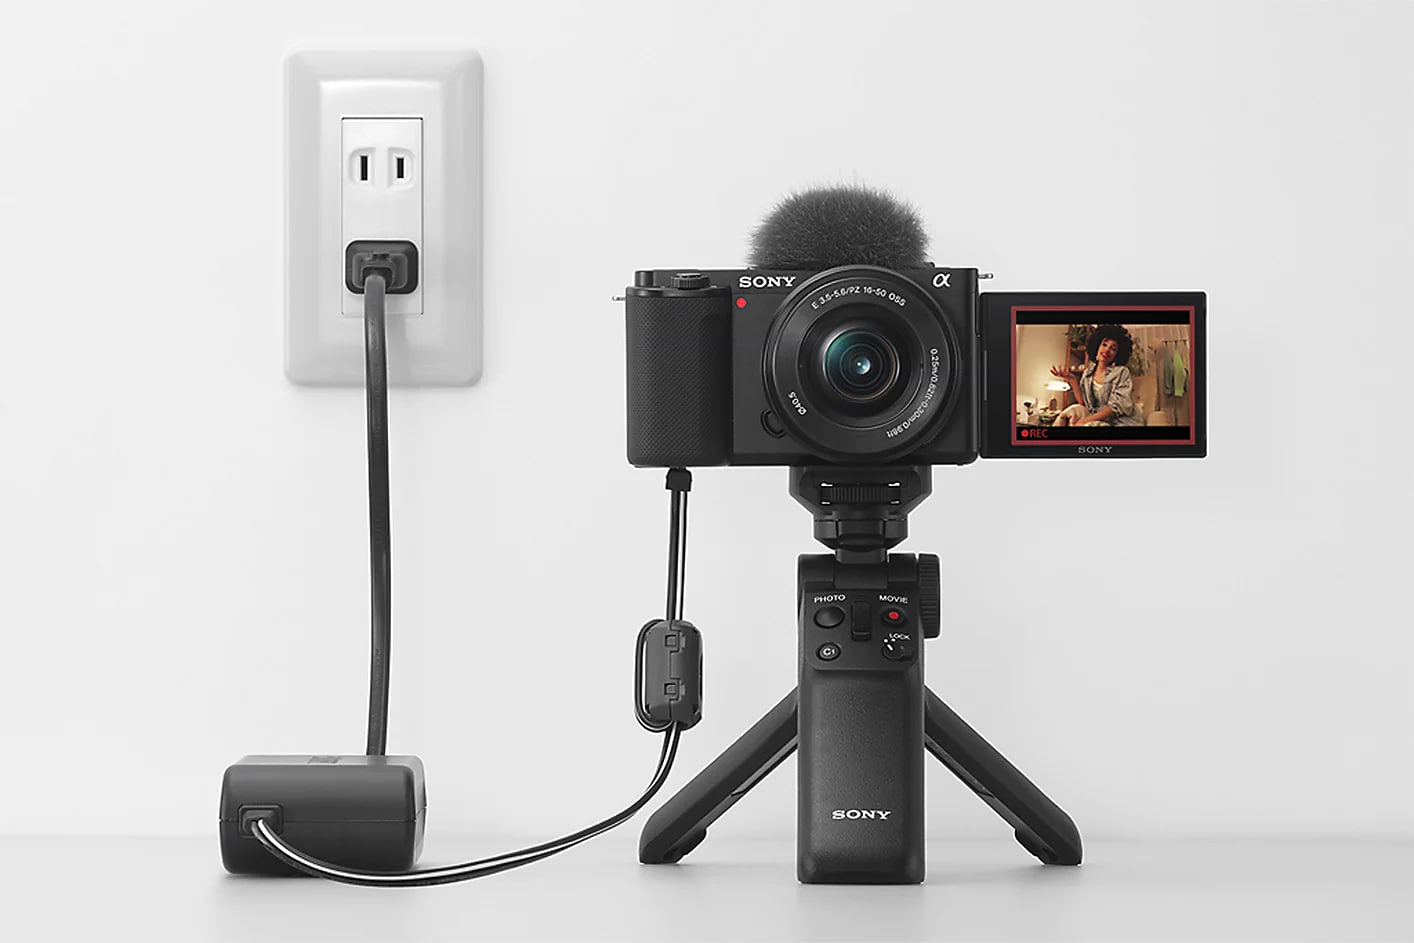 מצלמה דיגיטלית ללא מראה כולל עדשה Sony ZV-E10 E PZ 16-50mm f/3.5-5.6 OSS - צבע שחור שלוש שנות אחריות ע"י היבואן הרשמי